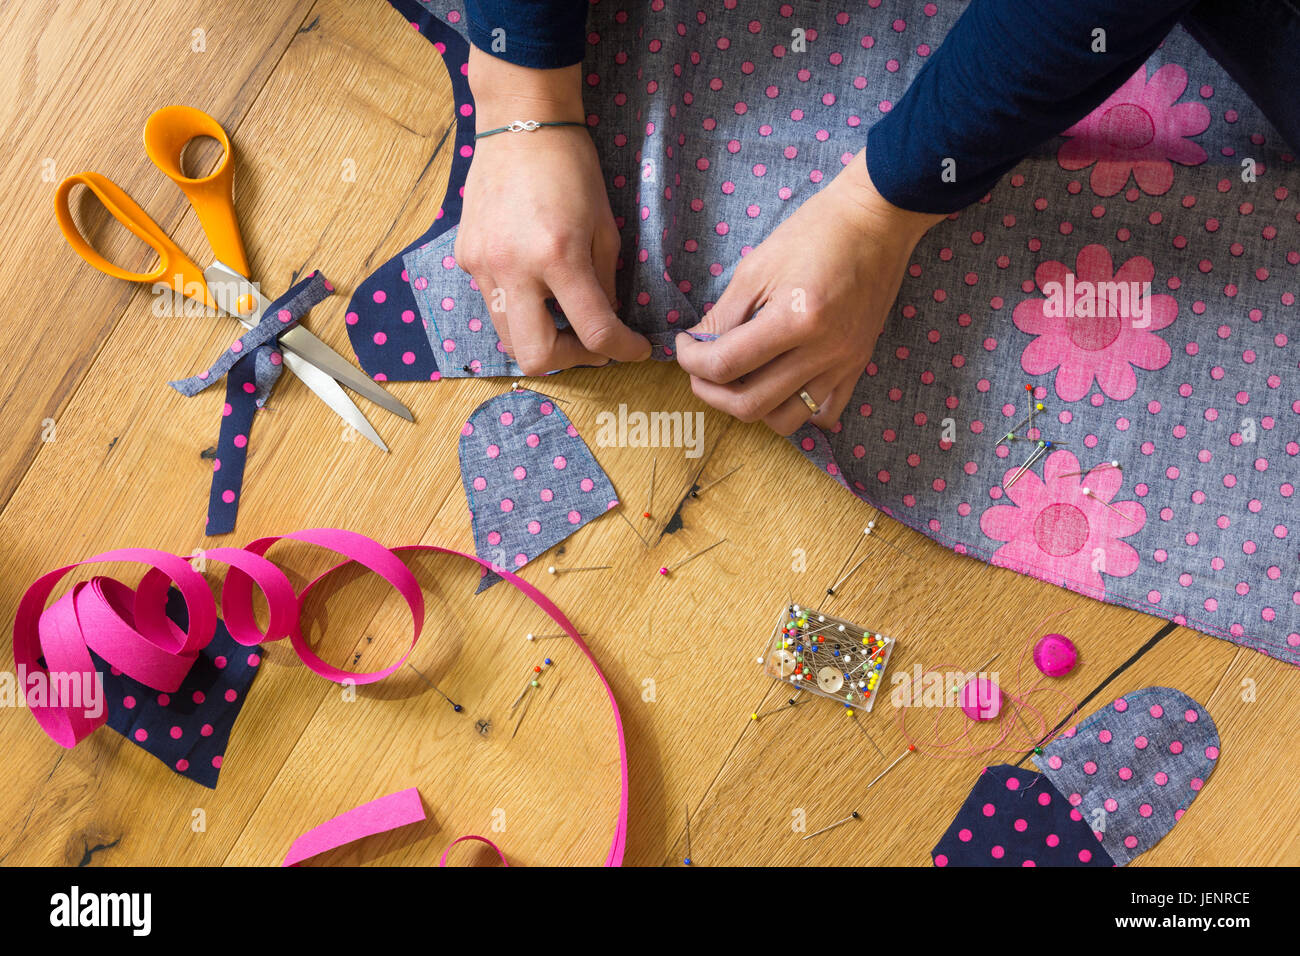 Une jeune femme épinglant un peu de tissu pour faire une robe. Thème : passe-temps, loisirs, arts et artisanat, création, couture, broderie Banque D'Images